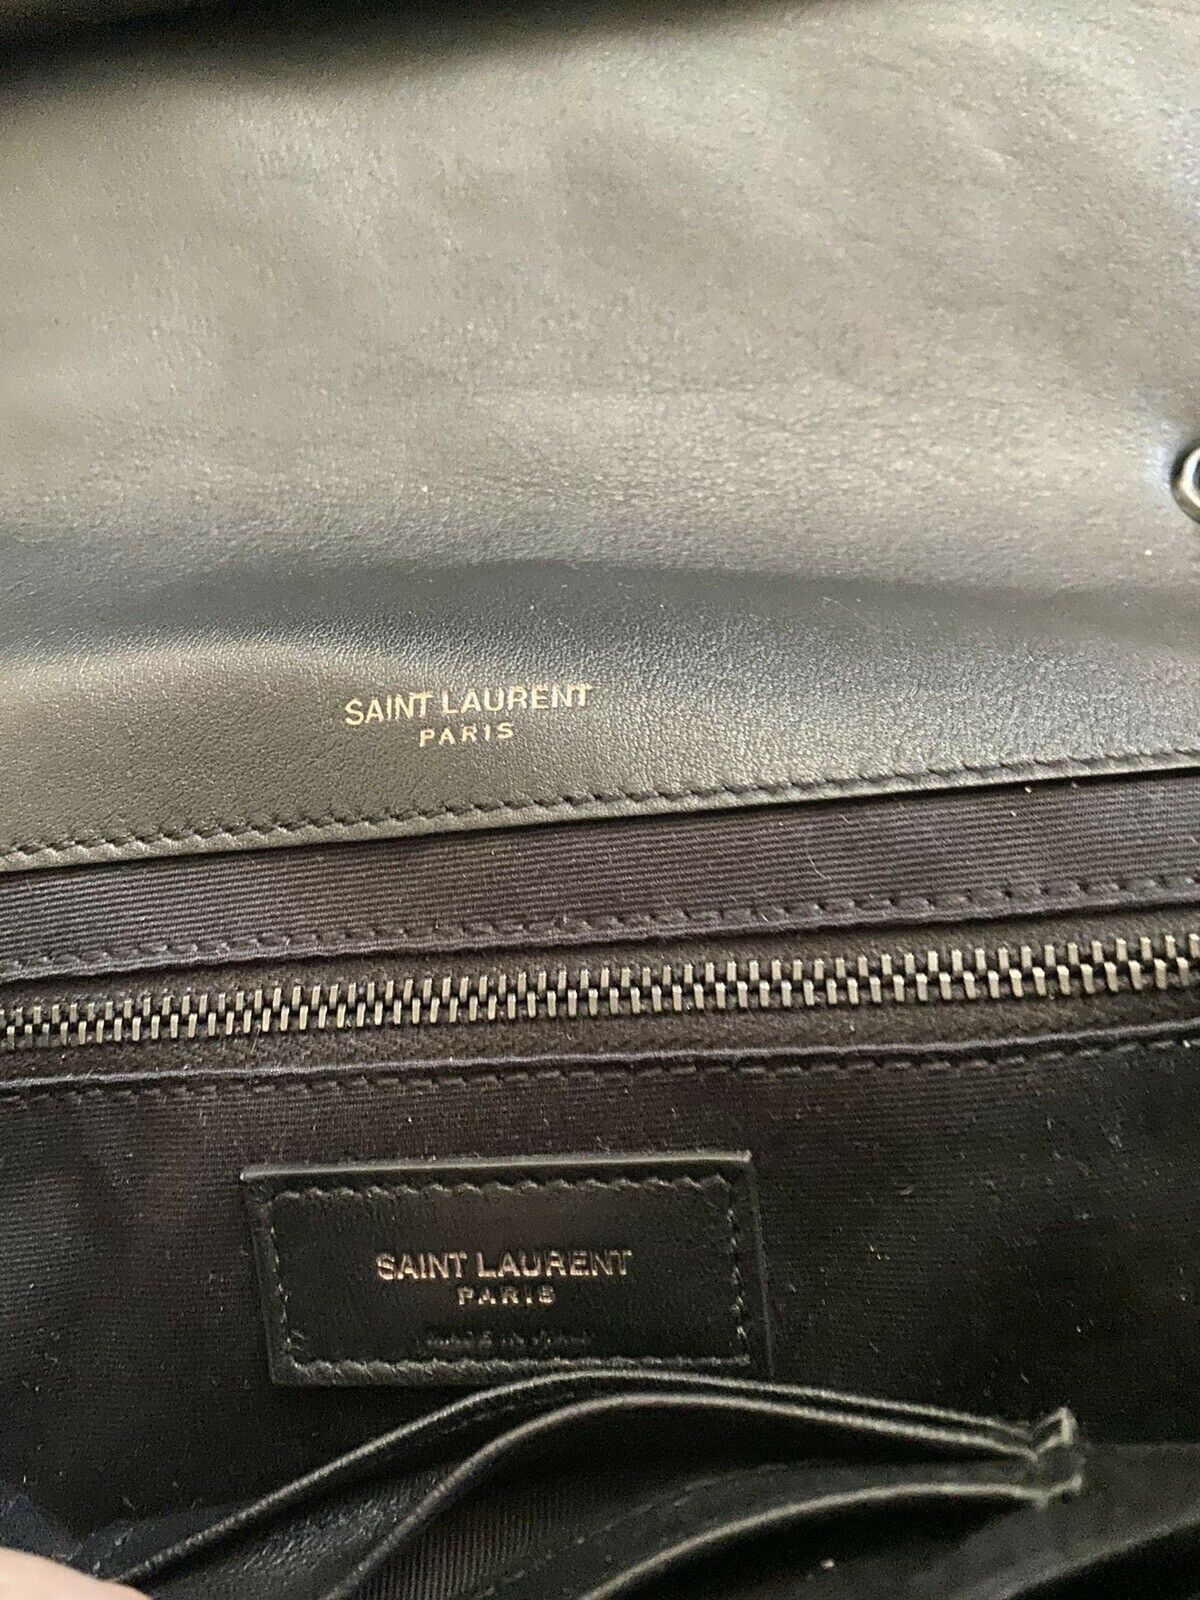 Новая кожаная сумка через плечо Saint Laurent YSL Jaime за 3150 долларов США, черная/коричневая 515821